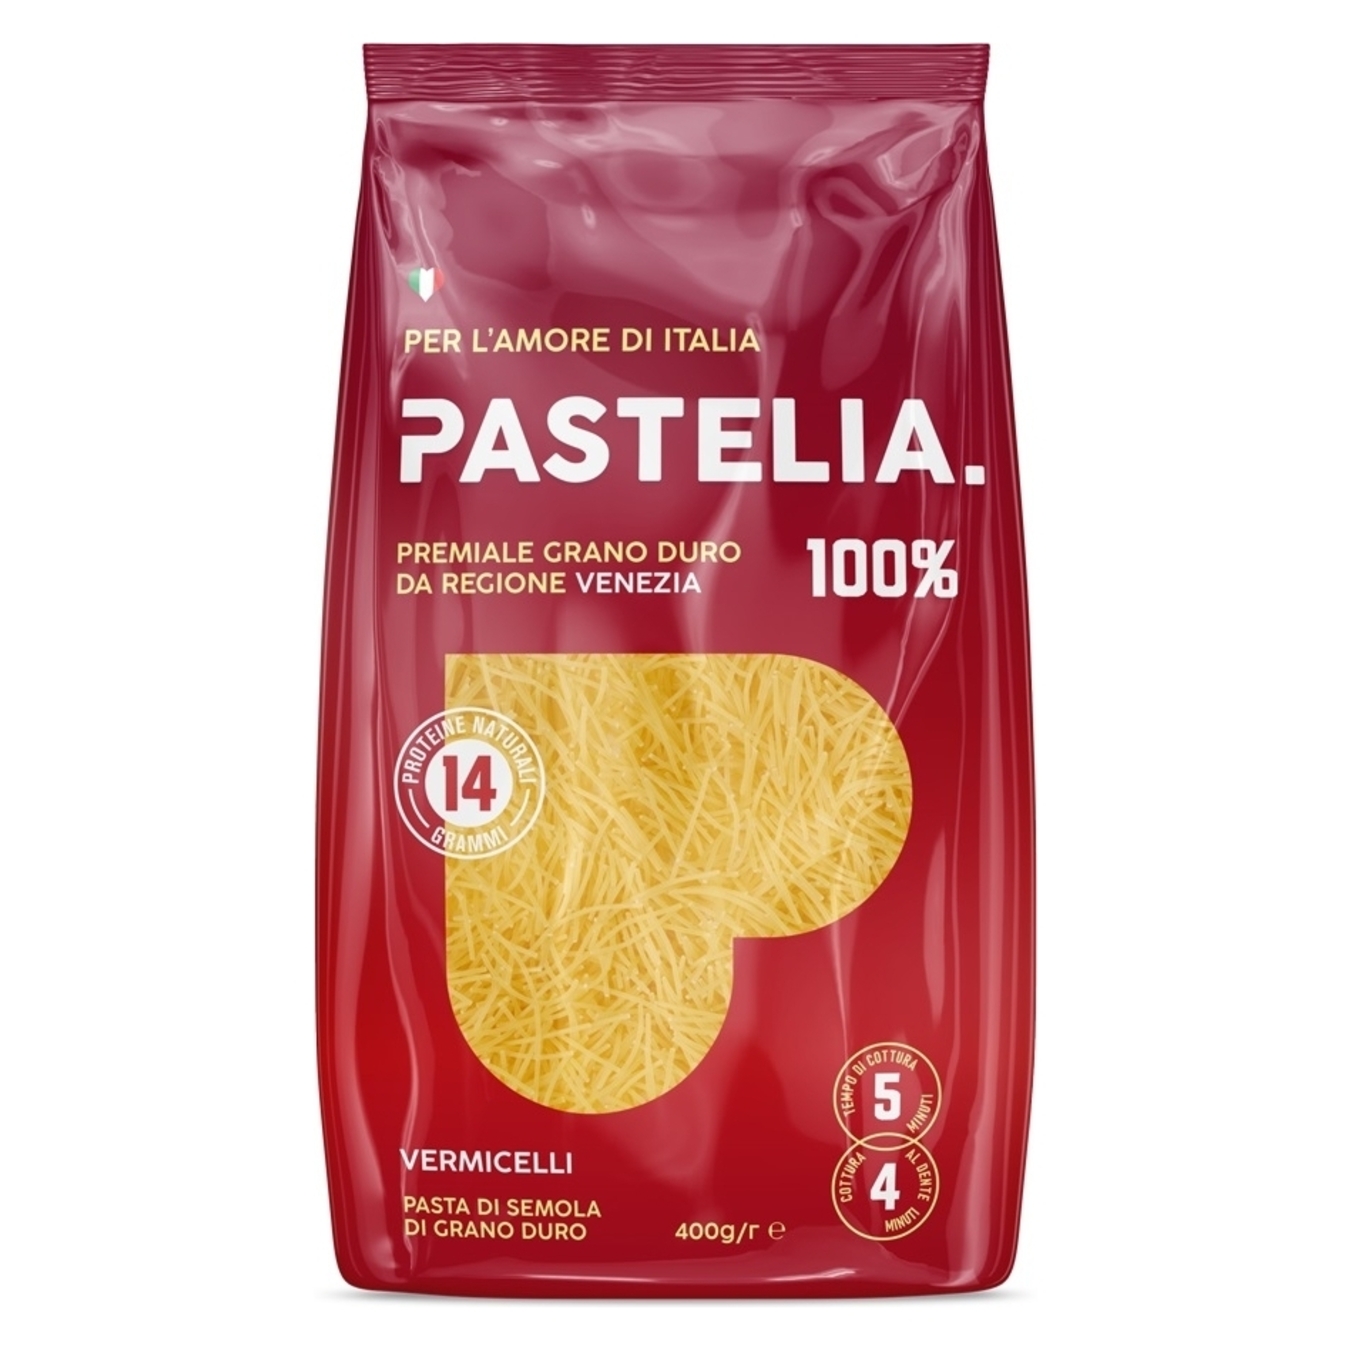 Pastelia Short Vermicelli Pasta 400g